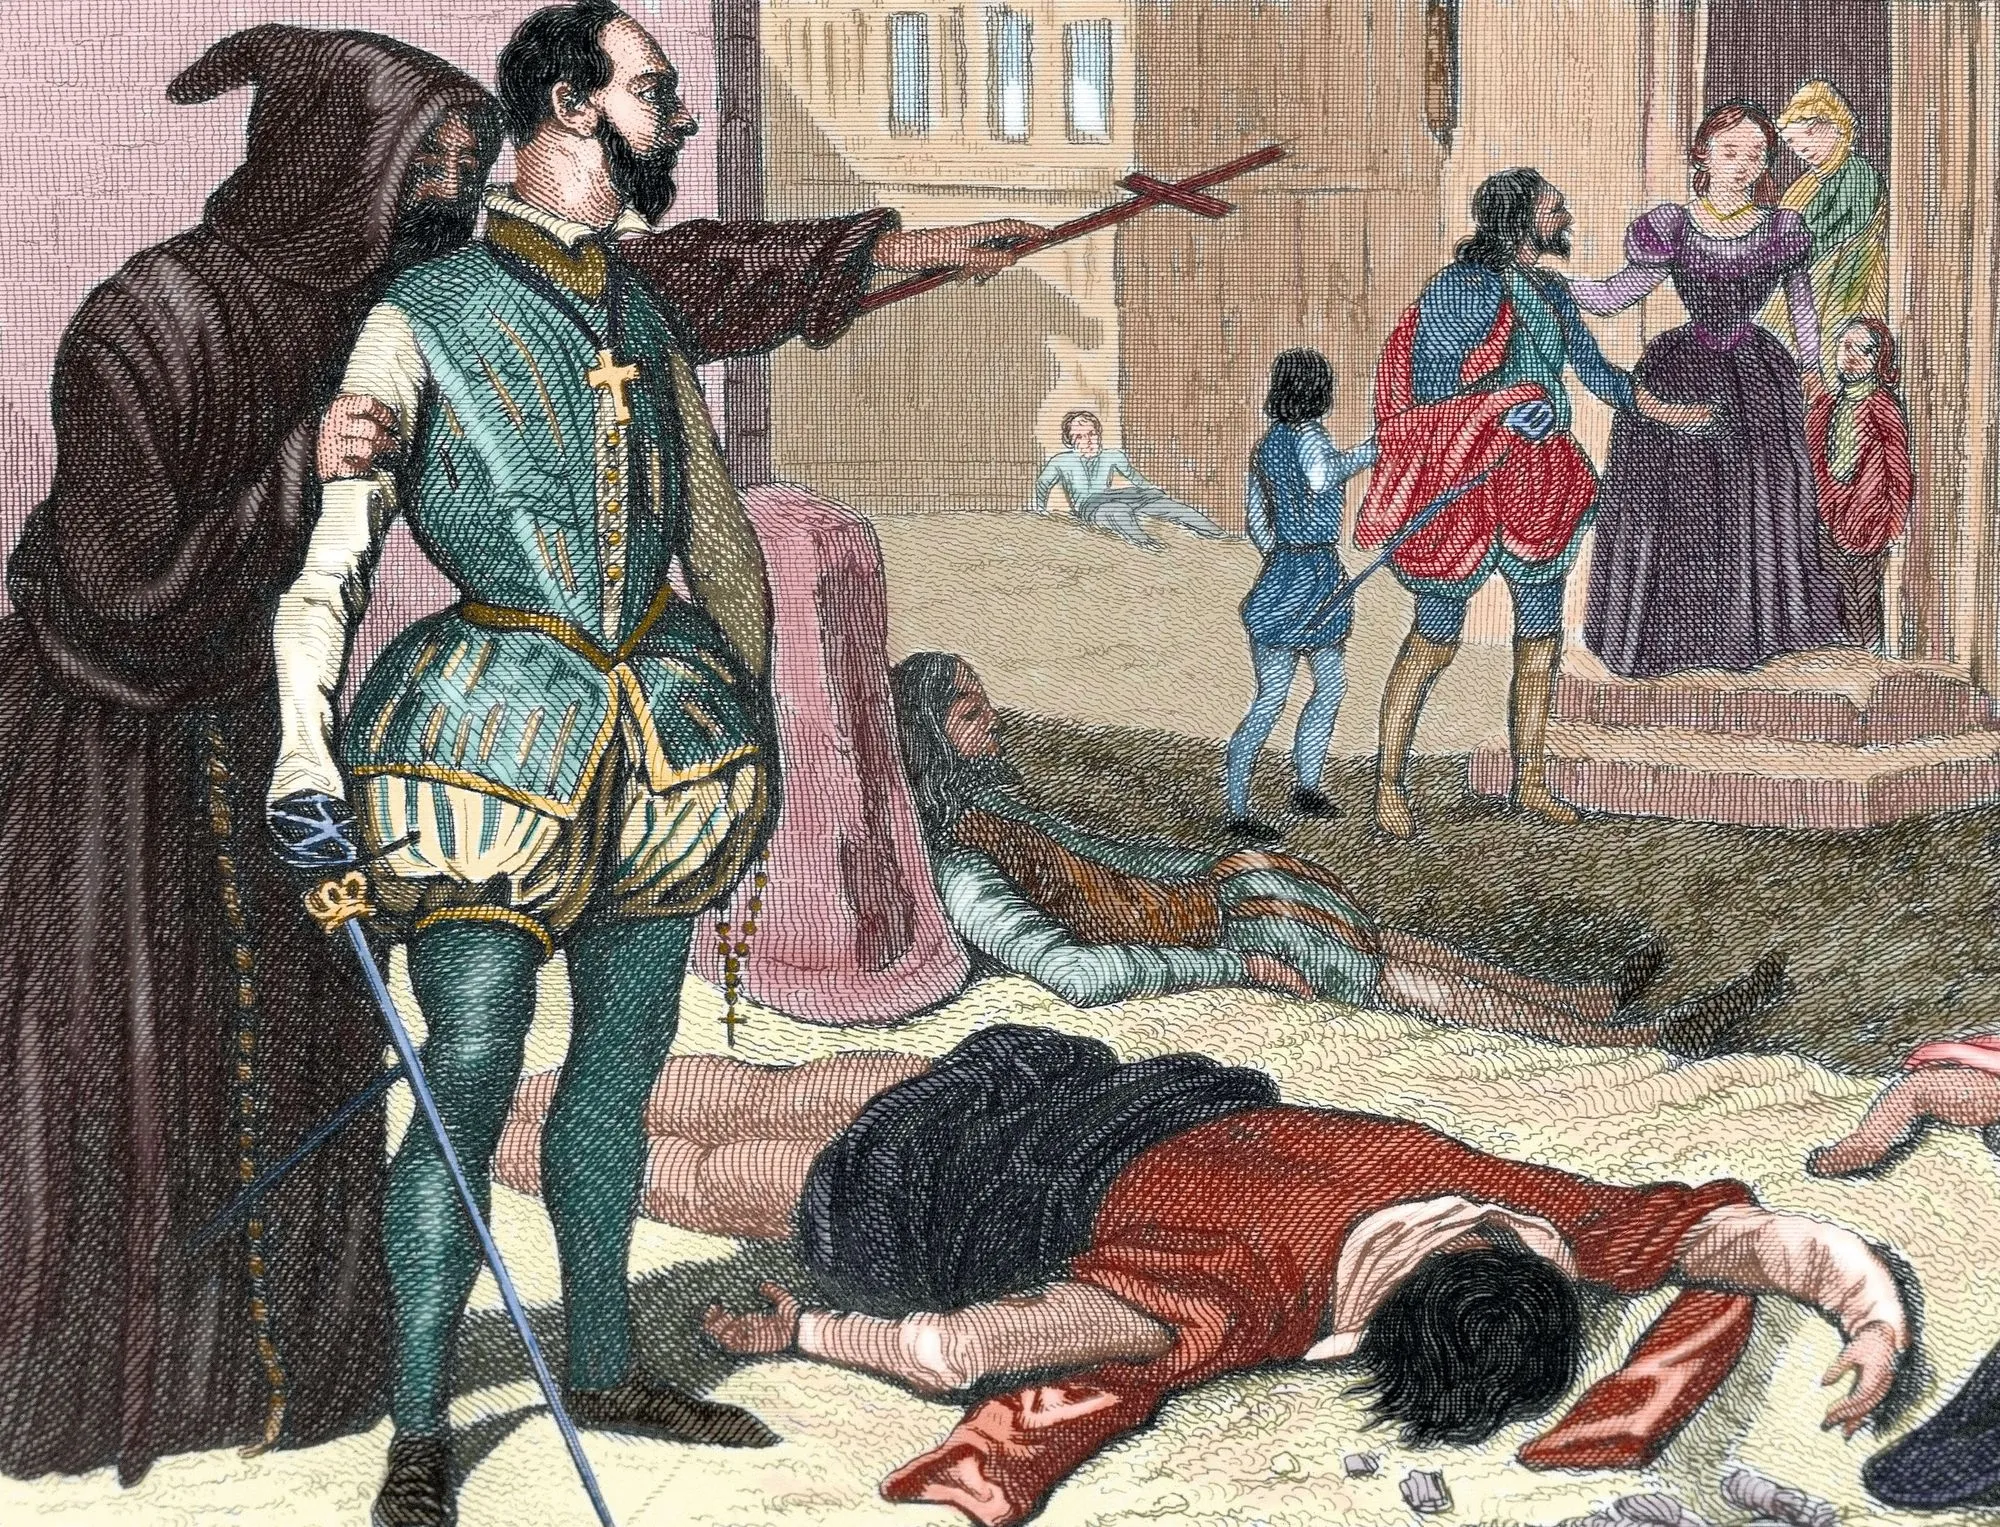 Anonyme, Un prêtre catholique enjoint un noble à tuer des protestants pendant le massacre de la Saint-Barthélémy, gravure colorisée, XIXe siècle.